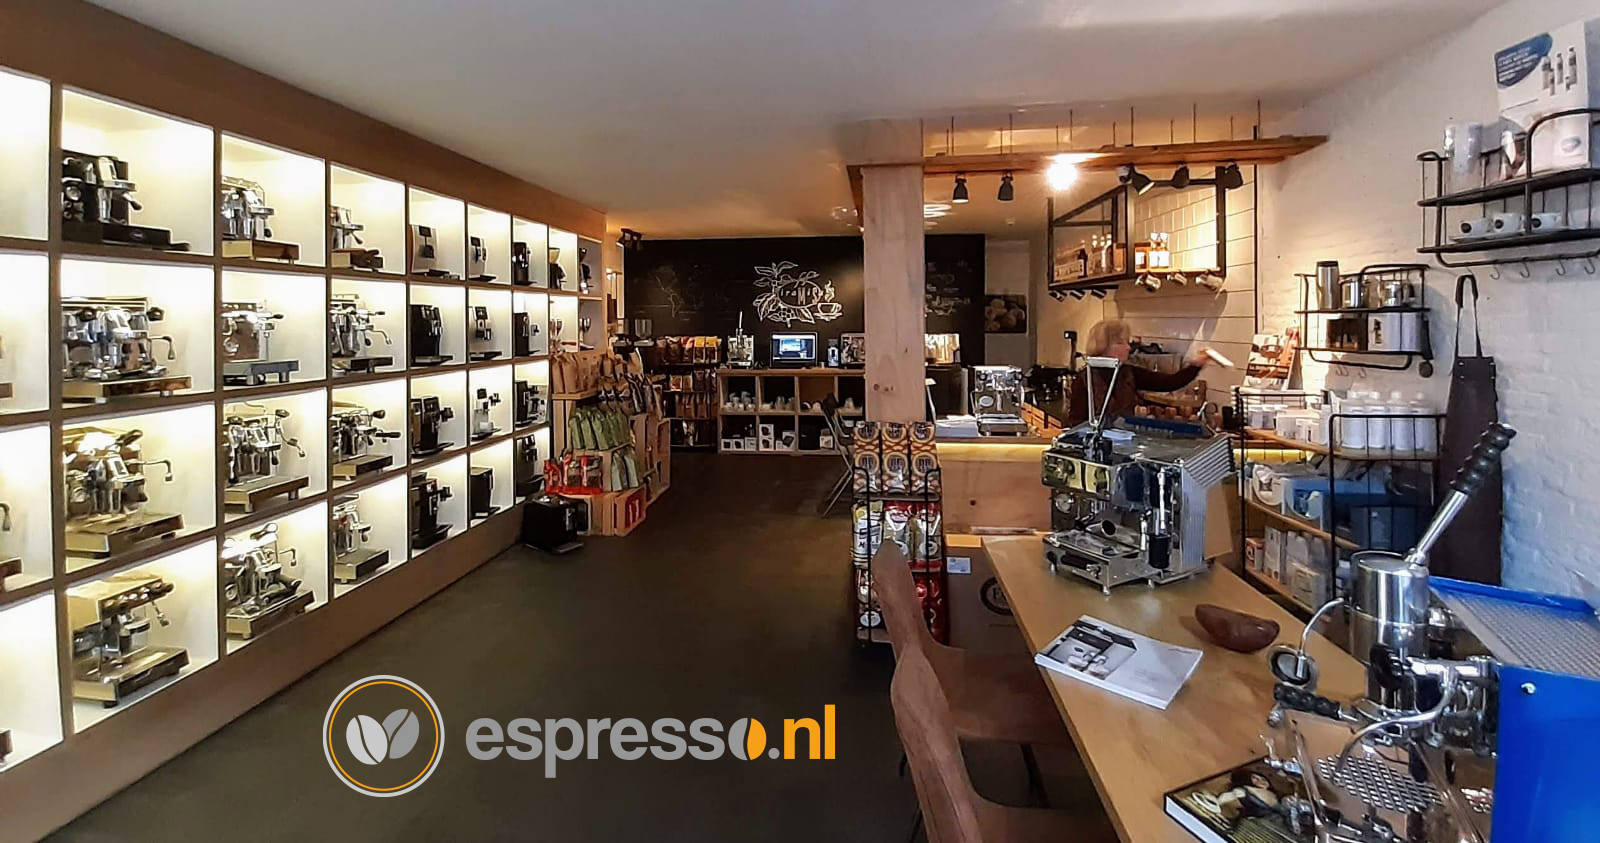 Huh Tegenwerken Plicht Espresso speciaalzaken - Koffiewinkels - Espresso.nl | Caffè Tiramisu '88 -  Webshop